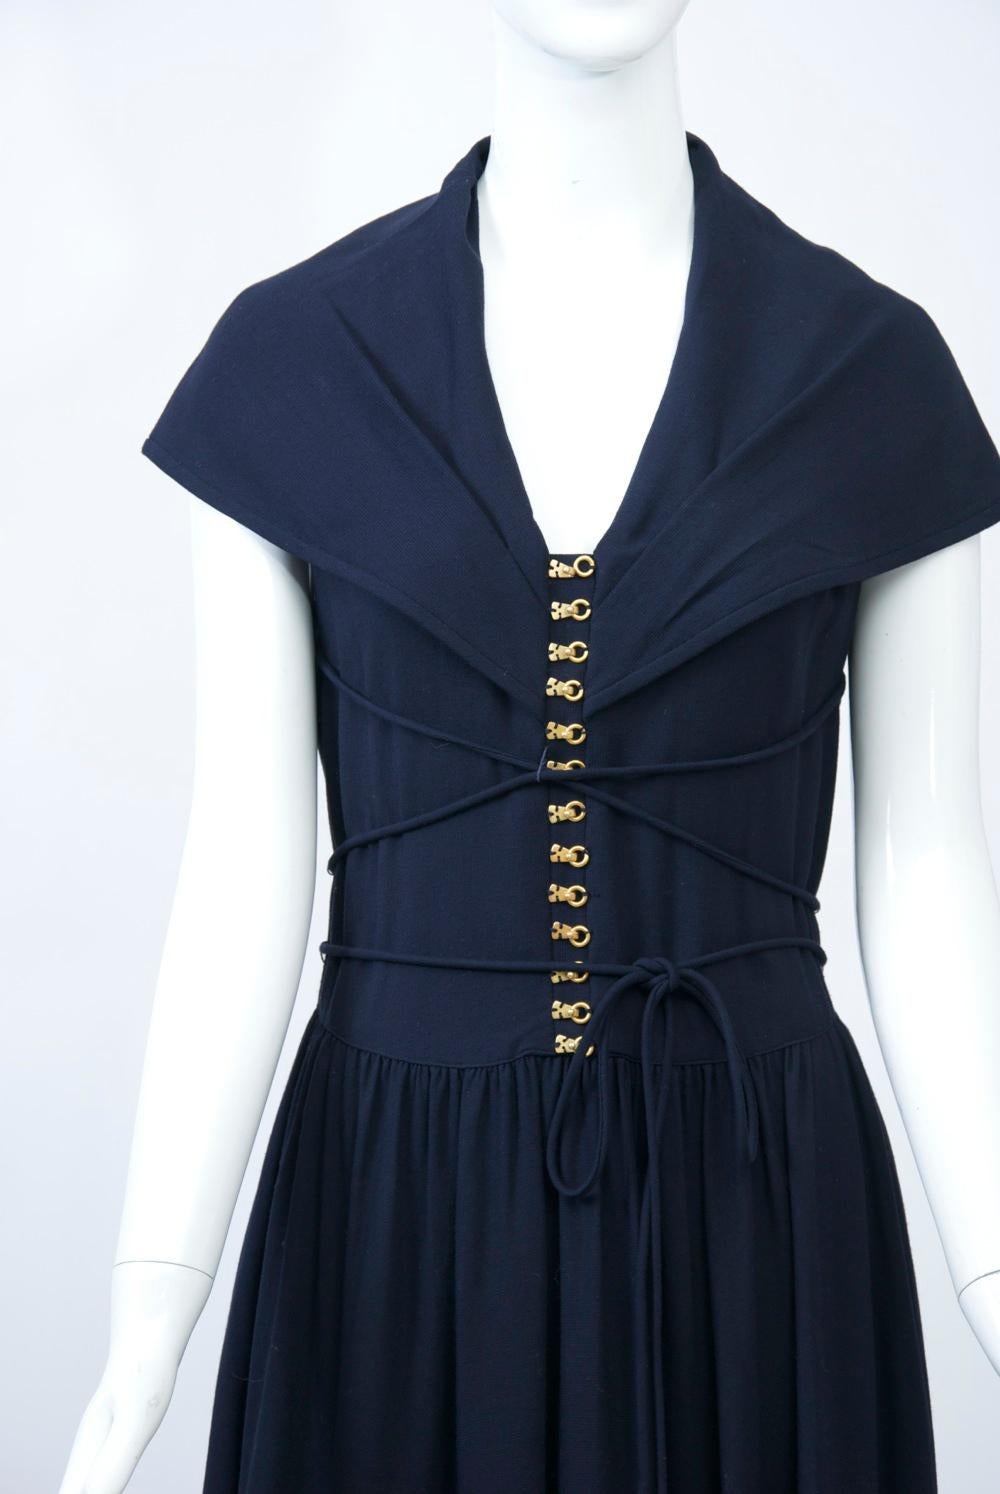 Langes Kleid aus marineblauem Woll-Acryl-Gemisch mit langem Oberteil mit Metall-Rollschuhhaken, die mit einem schmalen, selbsttragenden Gürtel geschnürt werden, und einem großen Matrosenkragen, der die Oberarme bedeckt und hinten in ein tiefes V